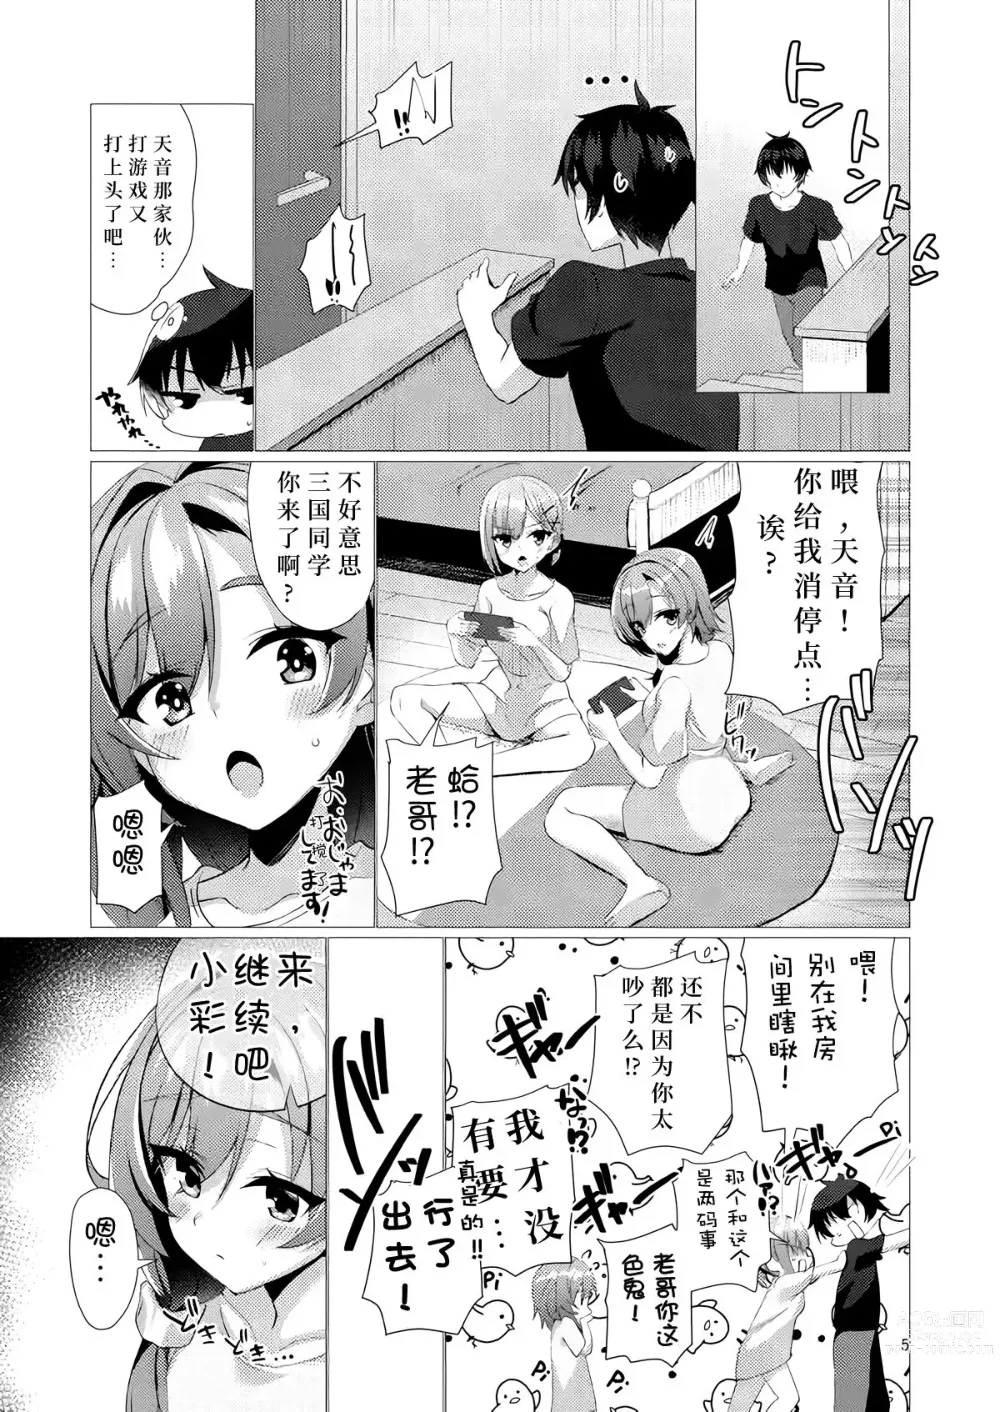 Page 4 of doujinshi 若已与你在梦中相遇过。